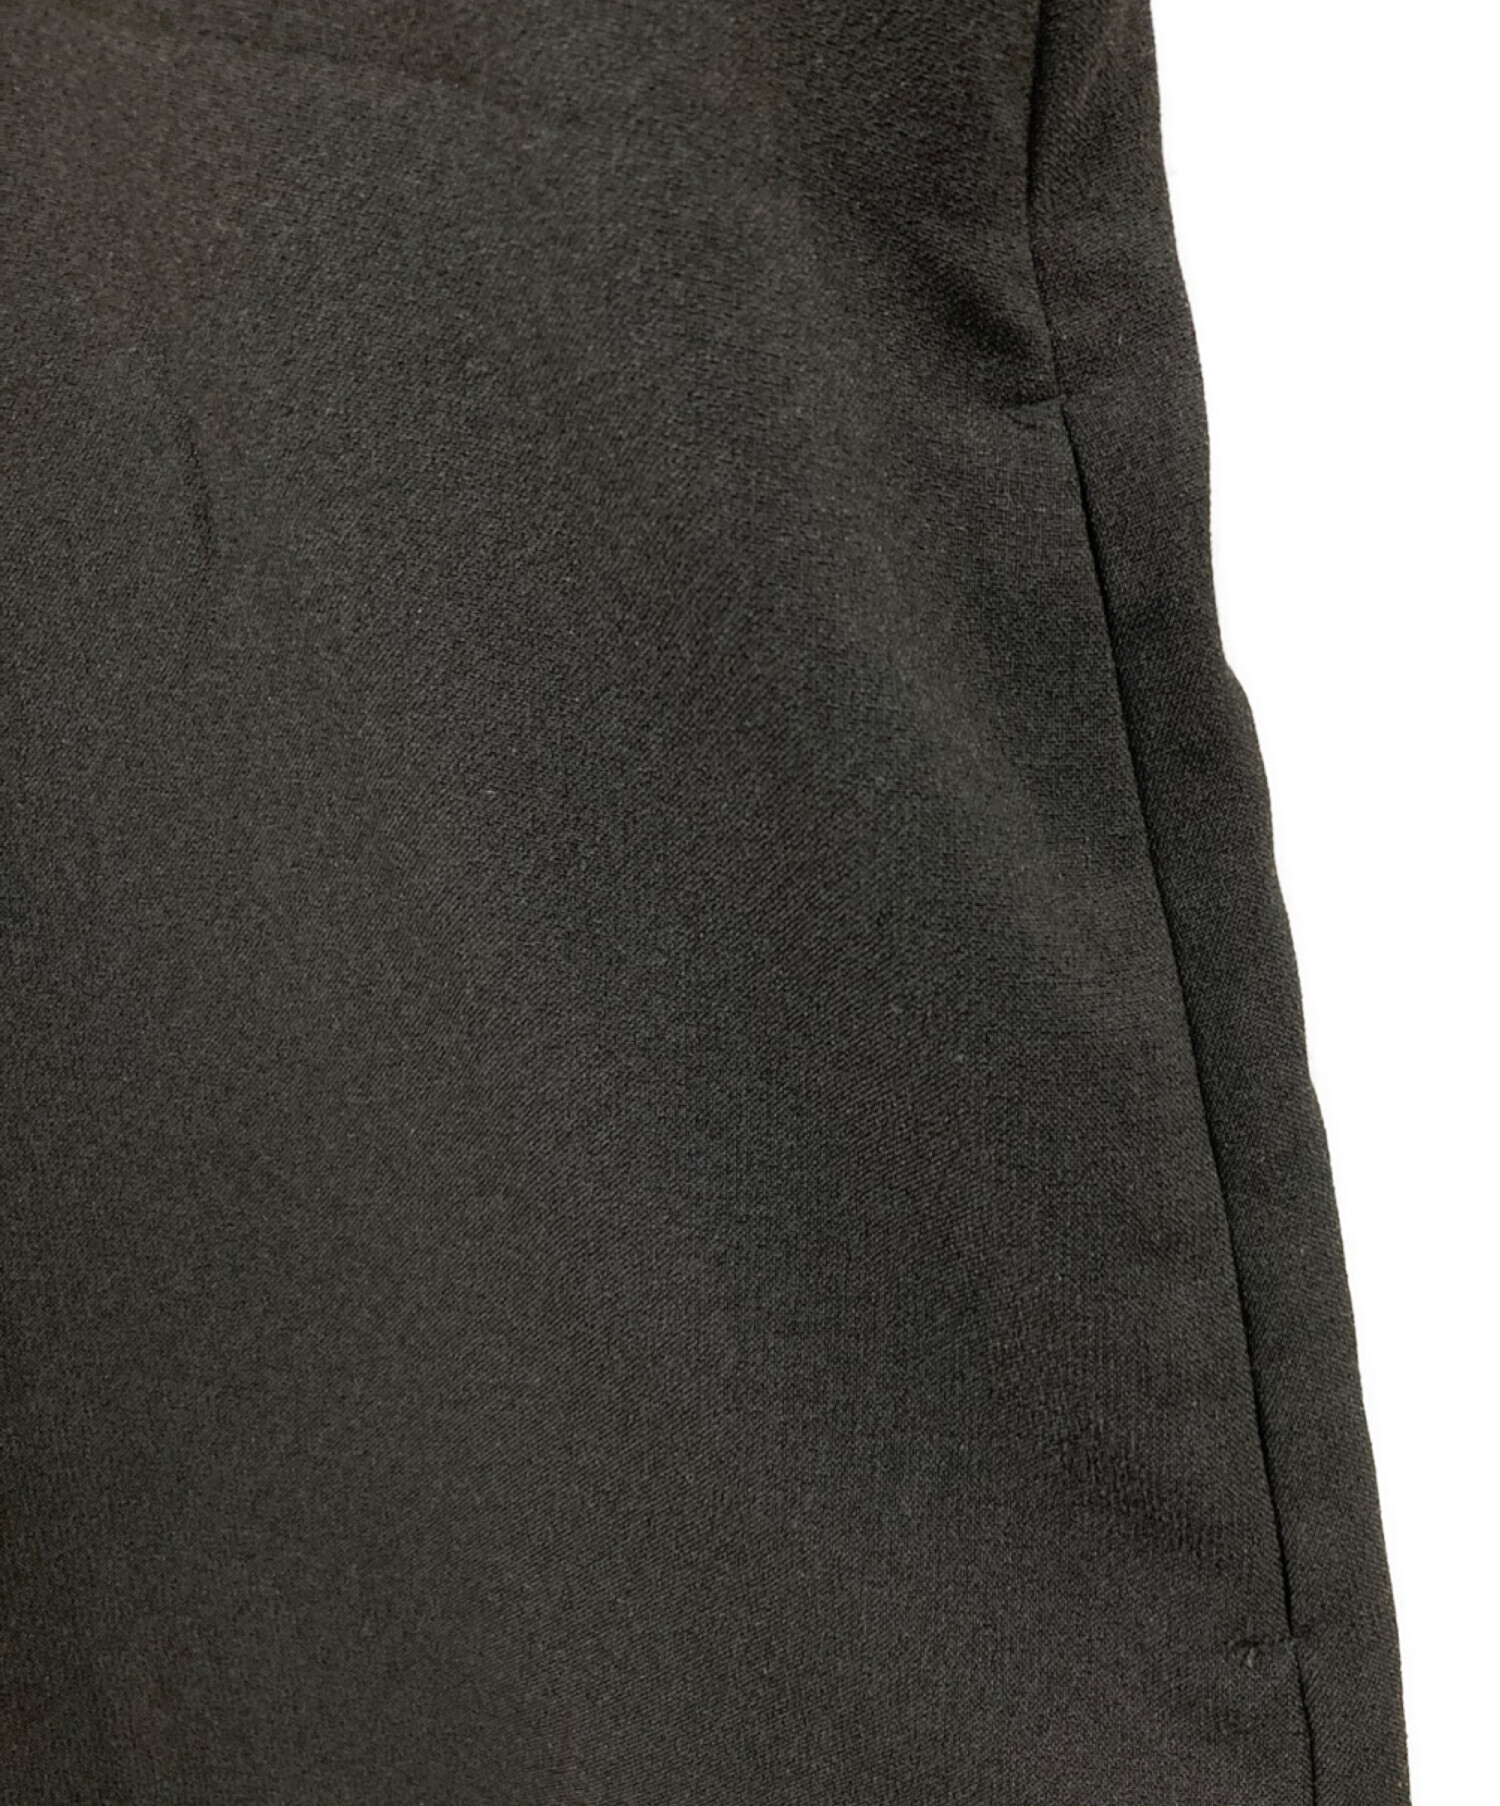 RIM.ARK (リムアーク) Black dress SCENE2/ブラックドレス シーン2 ブラック サイズ:38